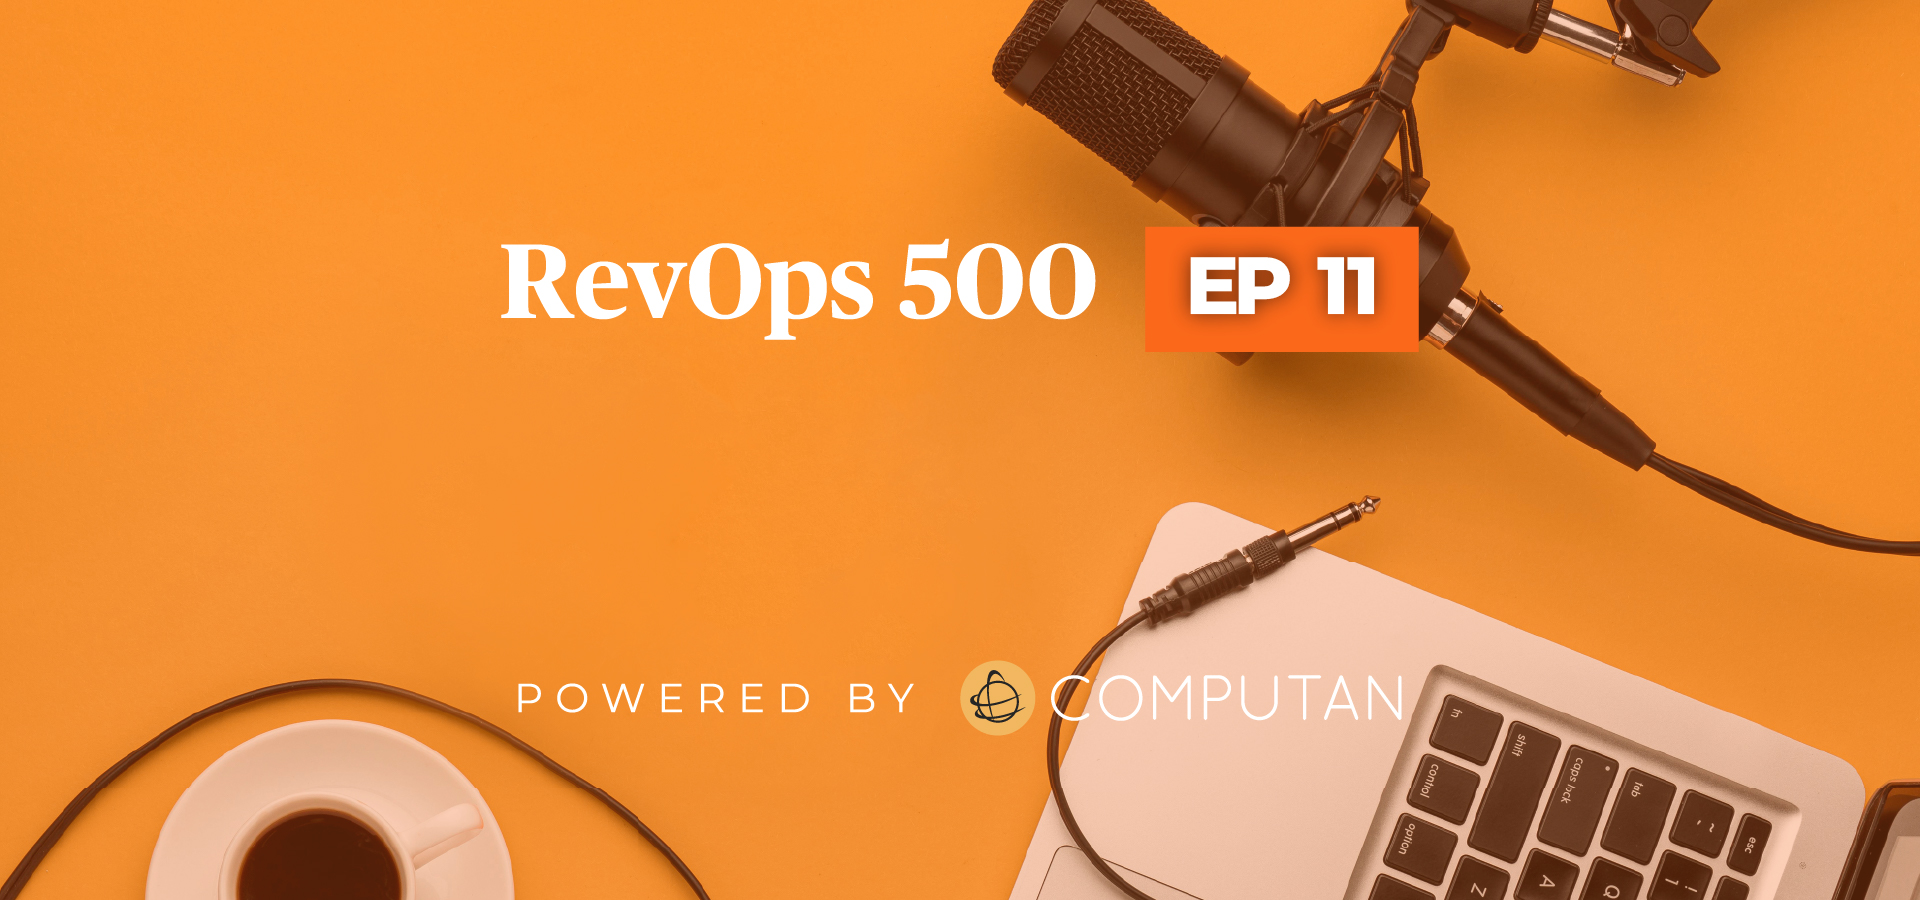 RevOps Episode 11